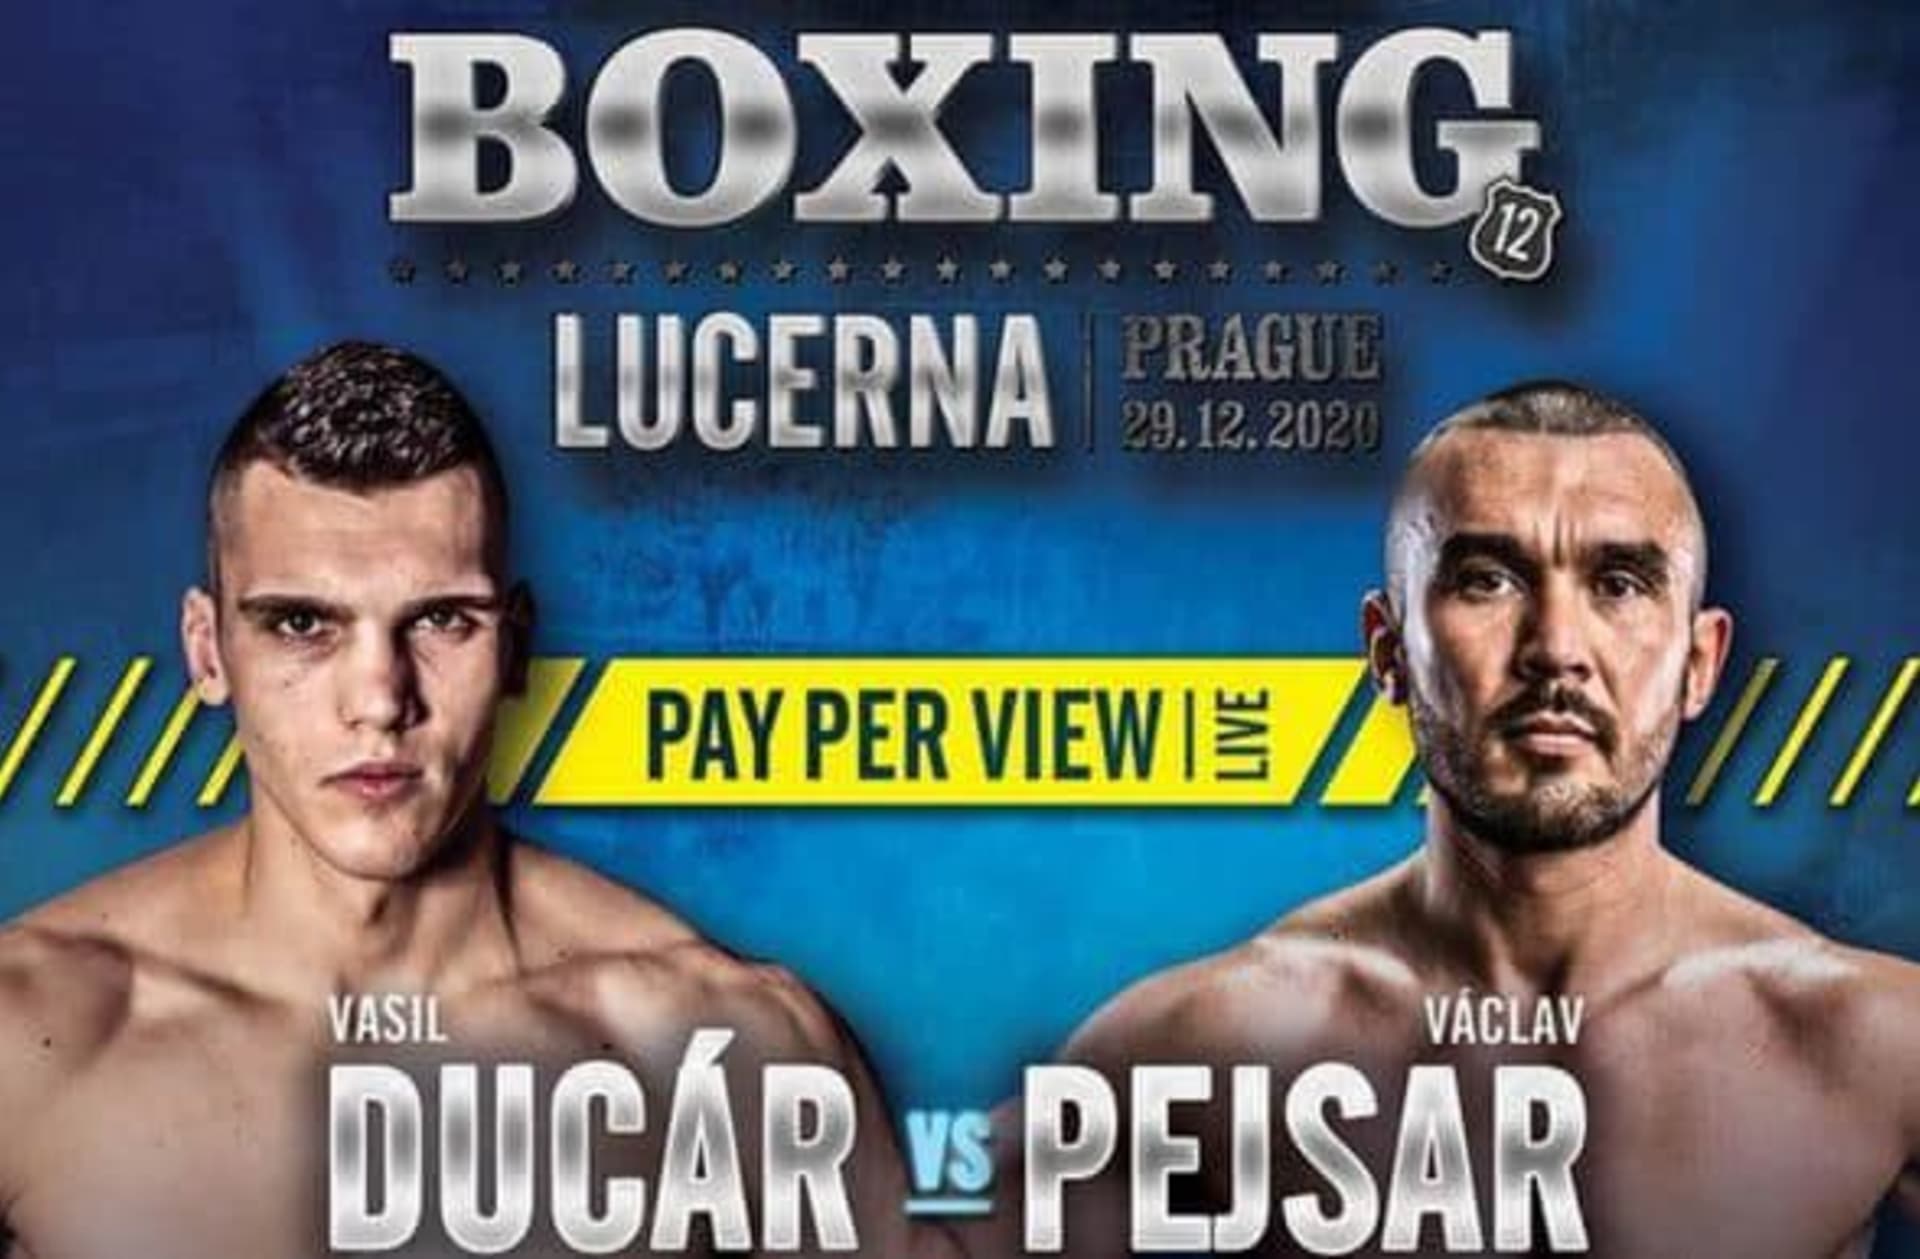 V Lucerně se v úterý proti sobě poprvé postaví boxeři Vasil Ducár a Václav Pejsar